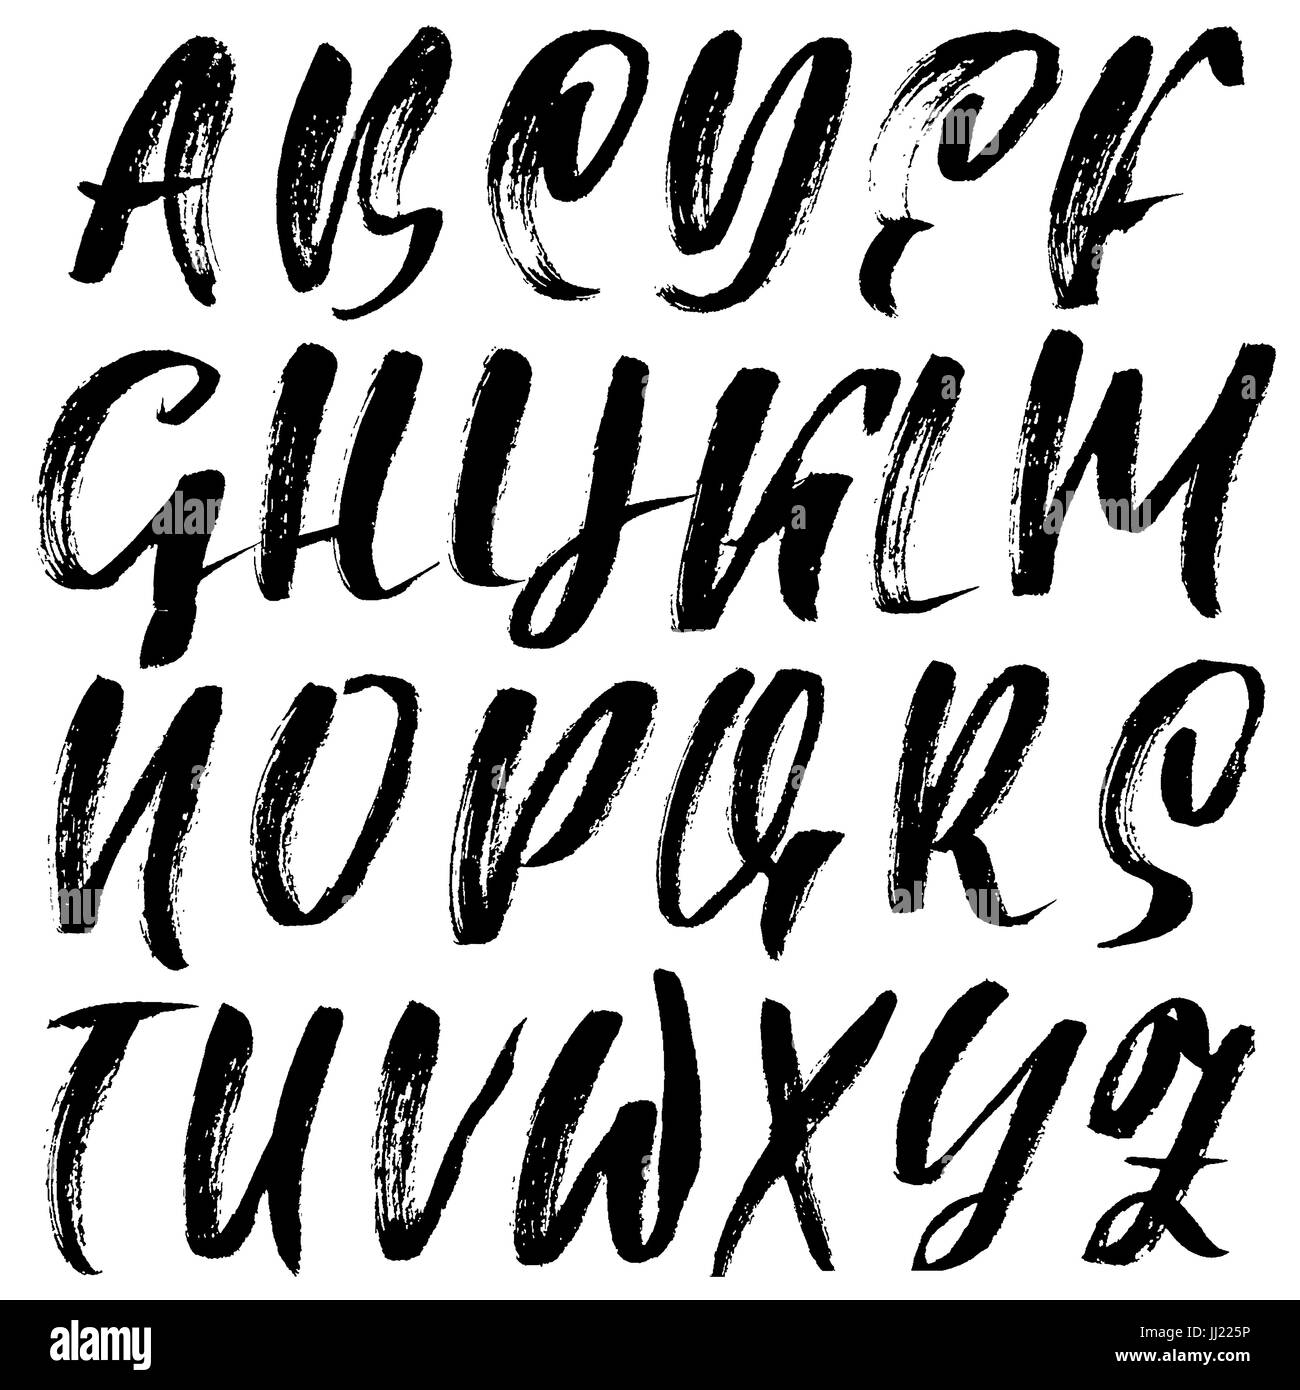 Hand drawn dry brush font. Modern brush lettering. Grunge style alphabet.  Vector illustration Stock Vector Image & Art - Alamy